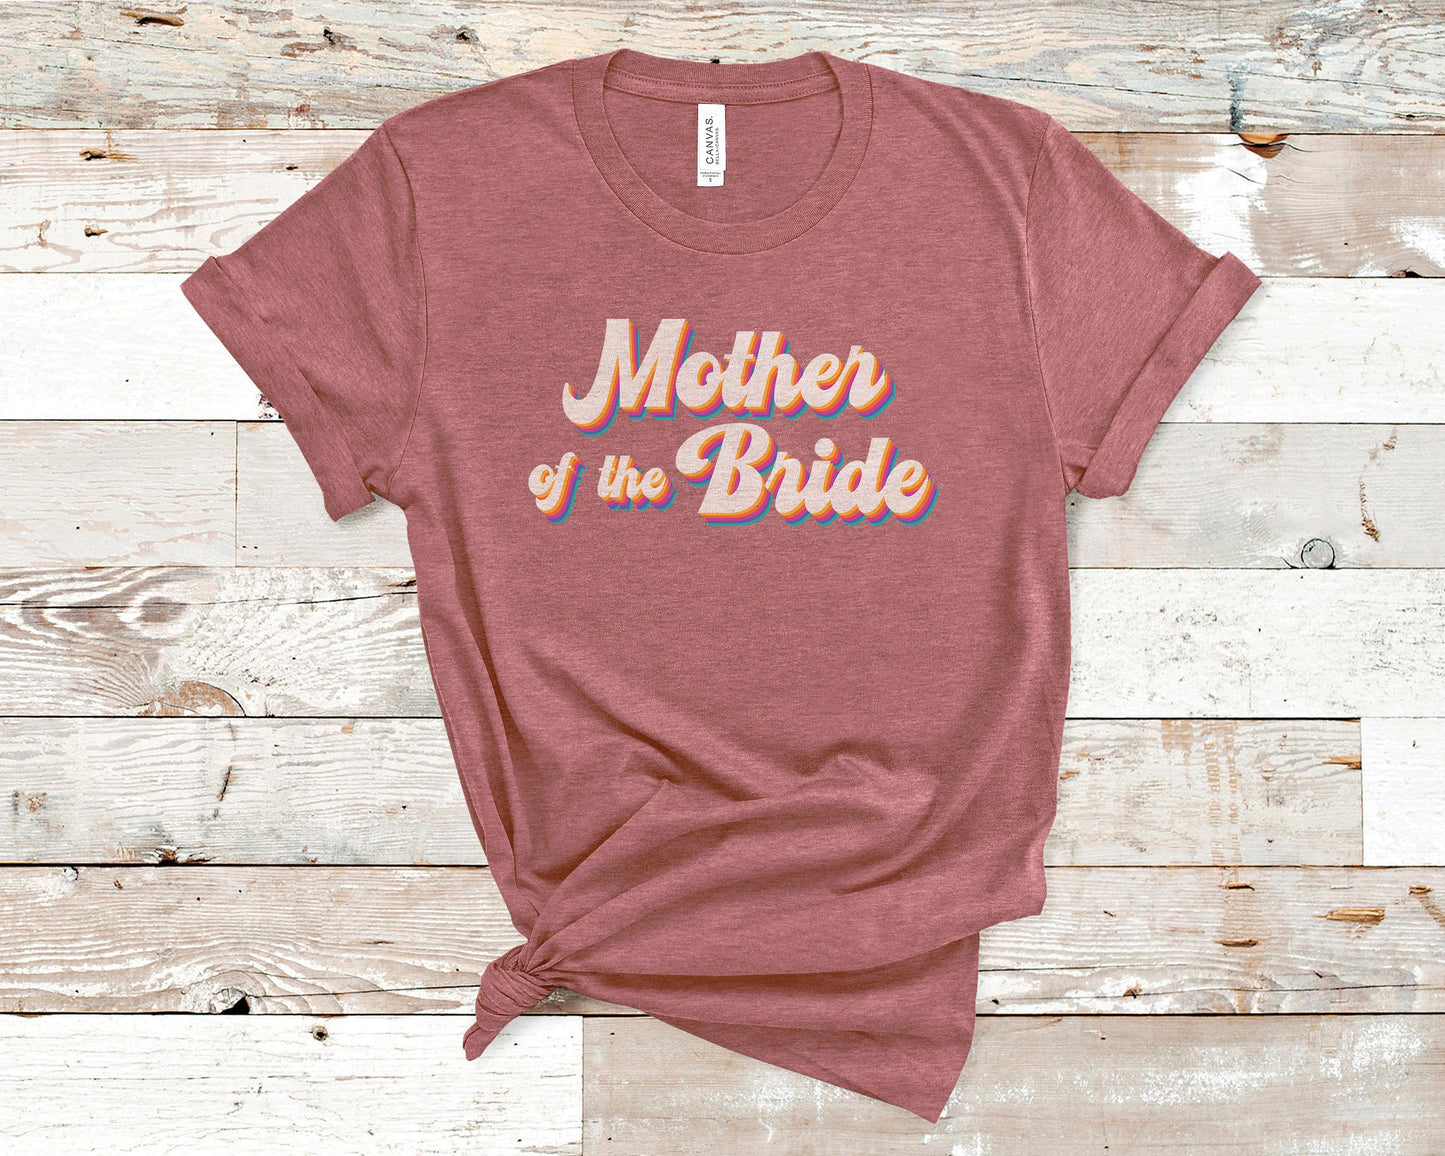 Mother of the Bride - Bride/Wedding